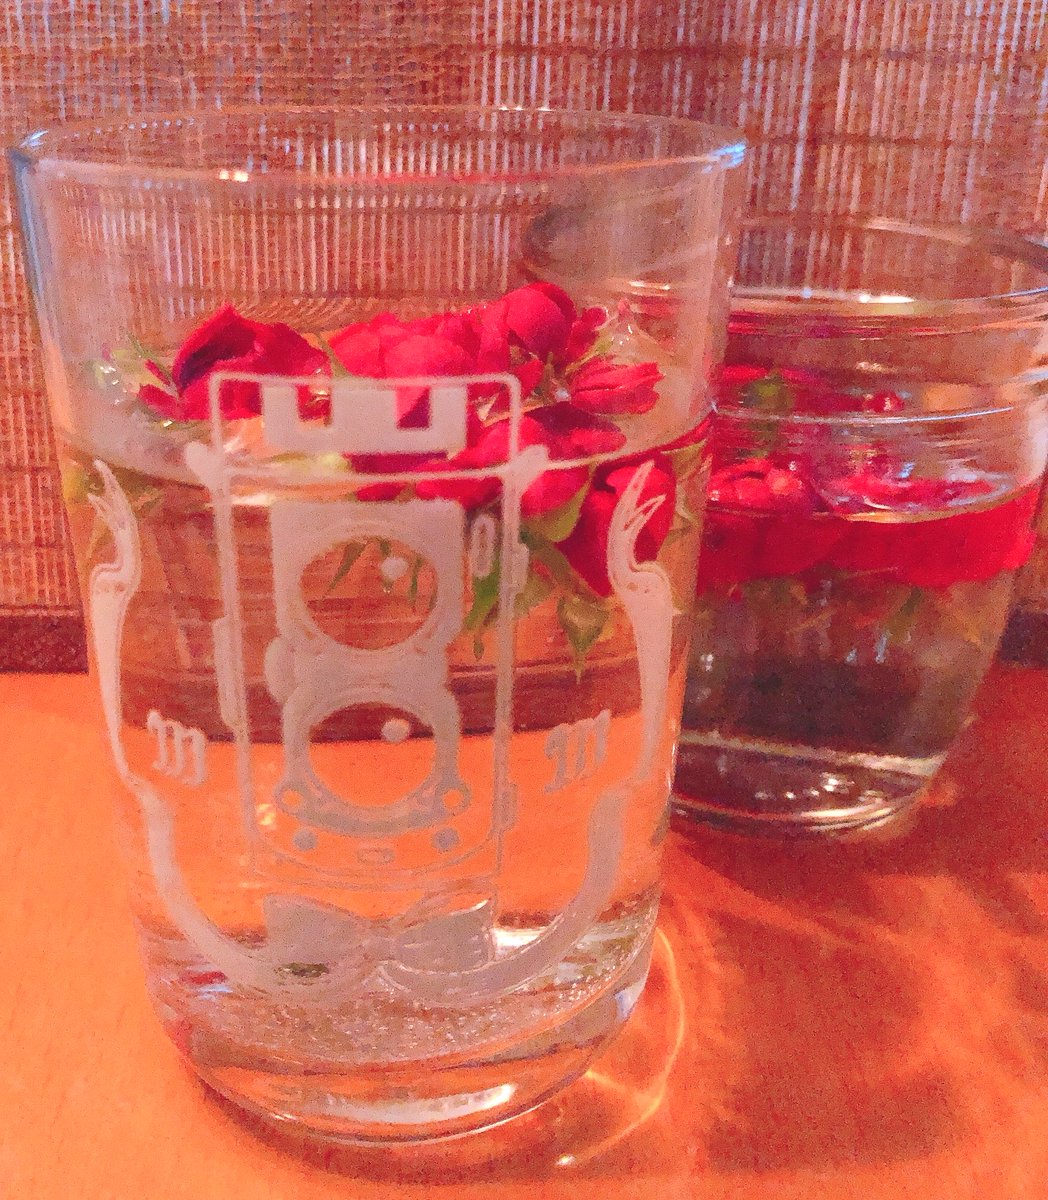 「お手入れで摘んだミニバラのつぼみ、今年もコップの中で咲いてくれて可愛いです」|八丸真幸のイラスト